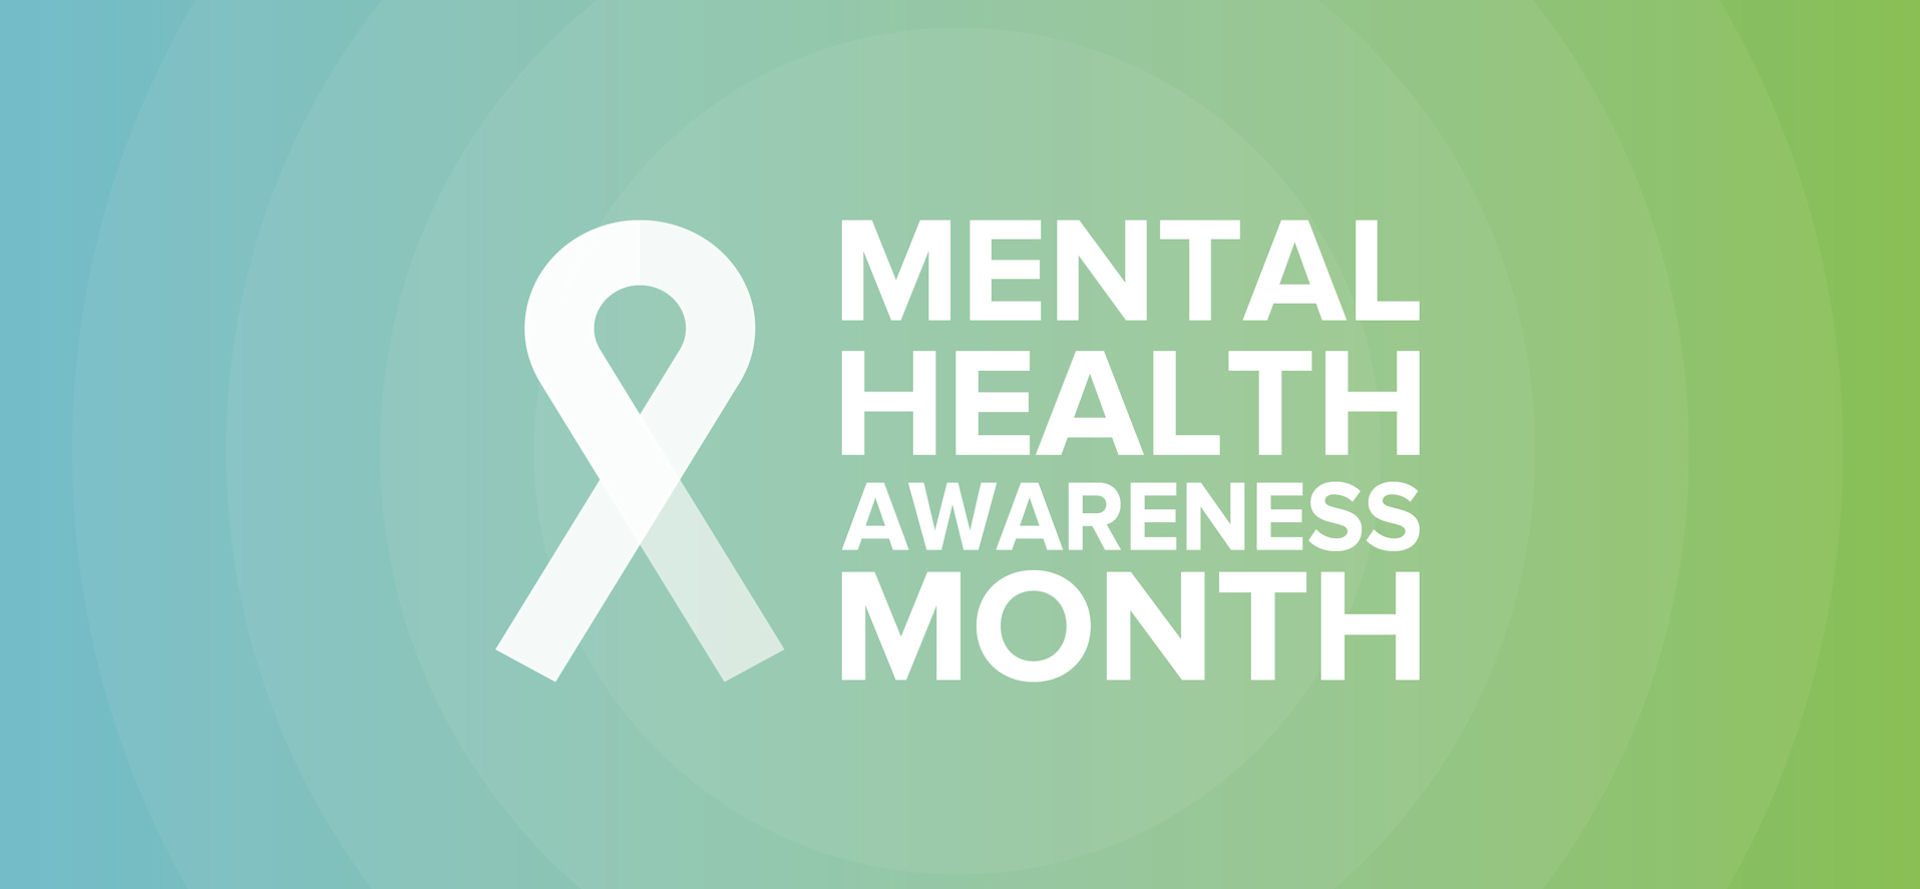 raise awareness for mental health